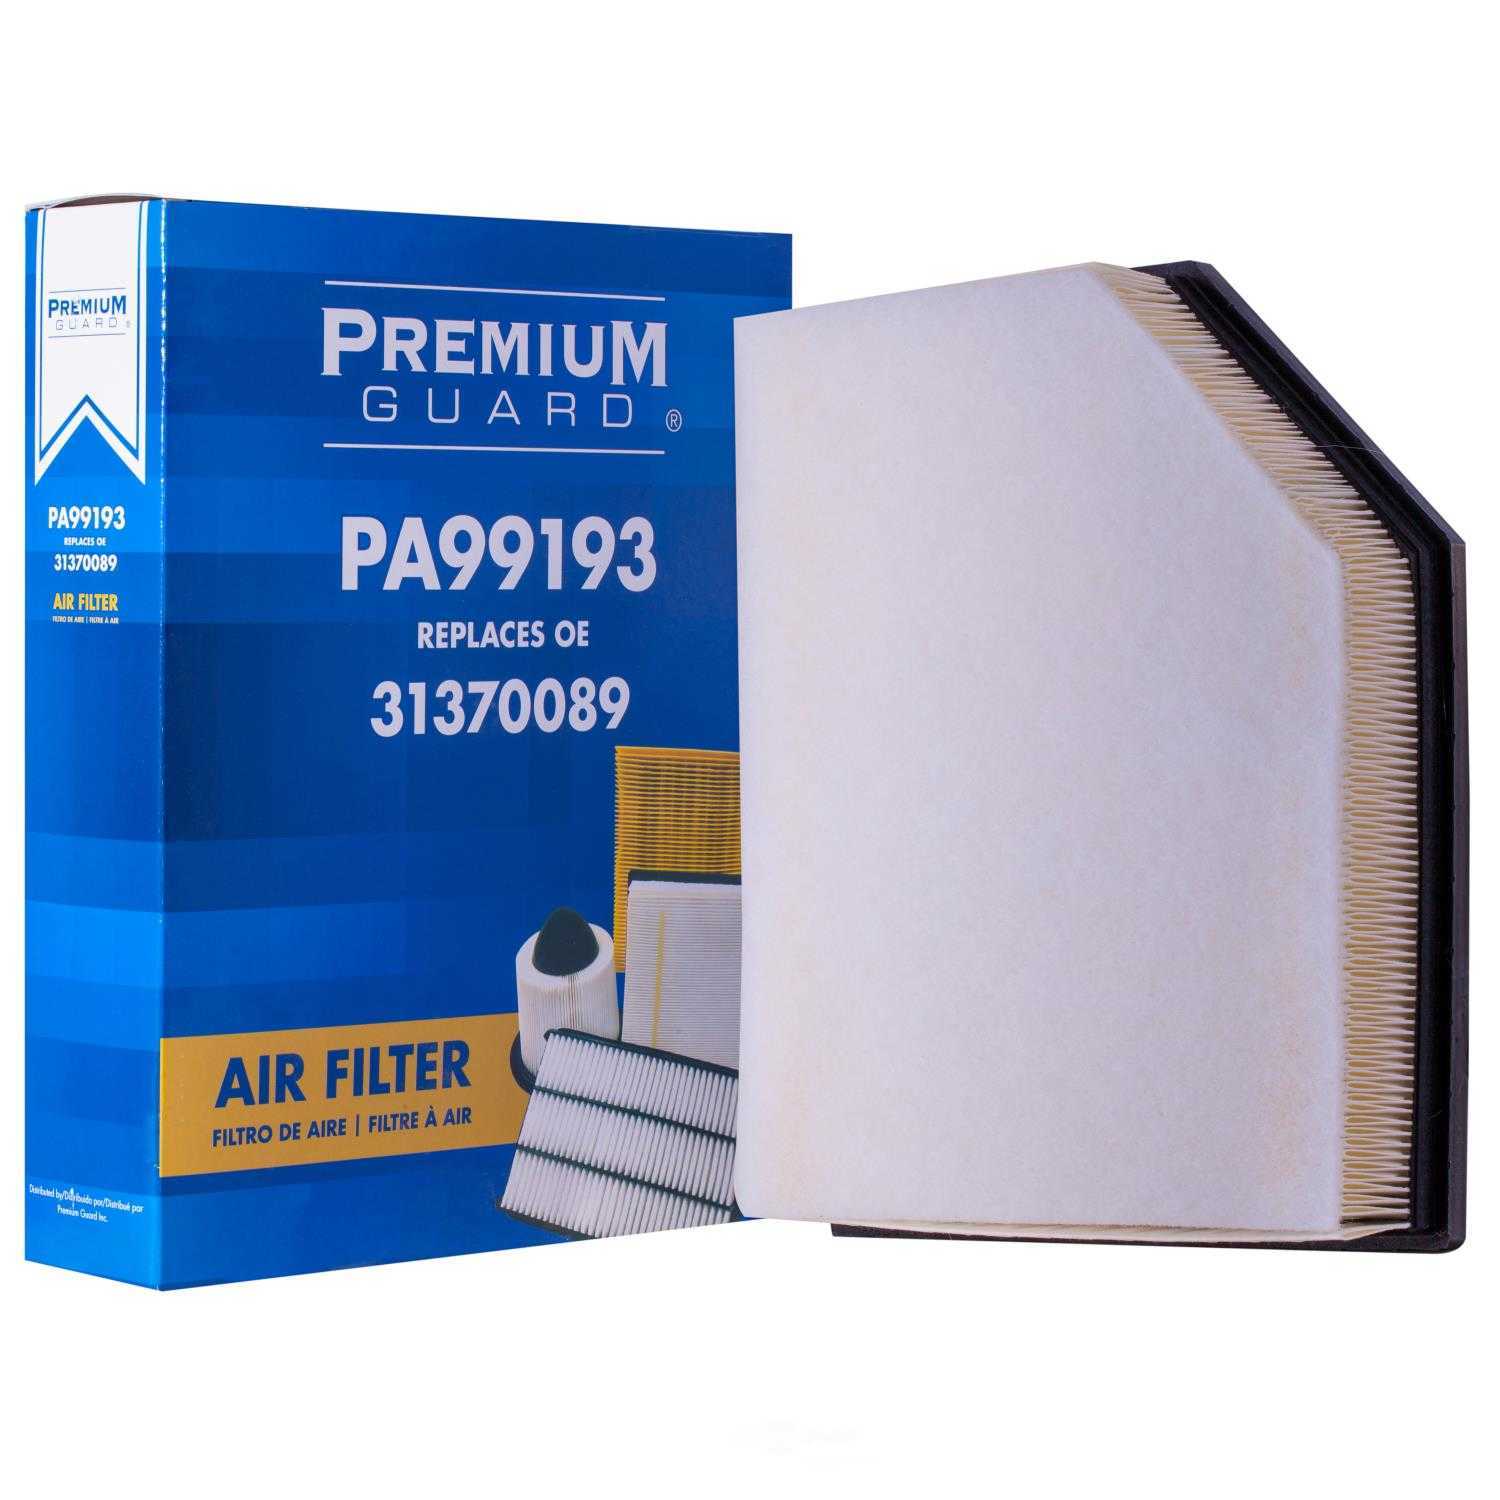 PREMIUM GUARD - Premium Guard Air Filter - PRG PA99193